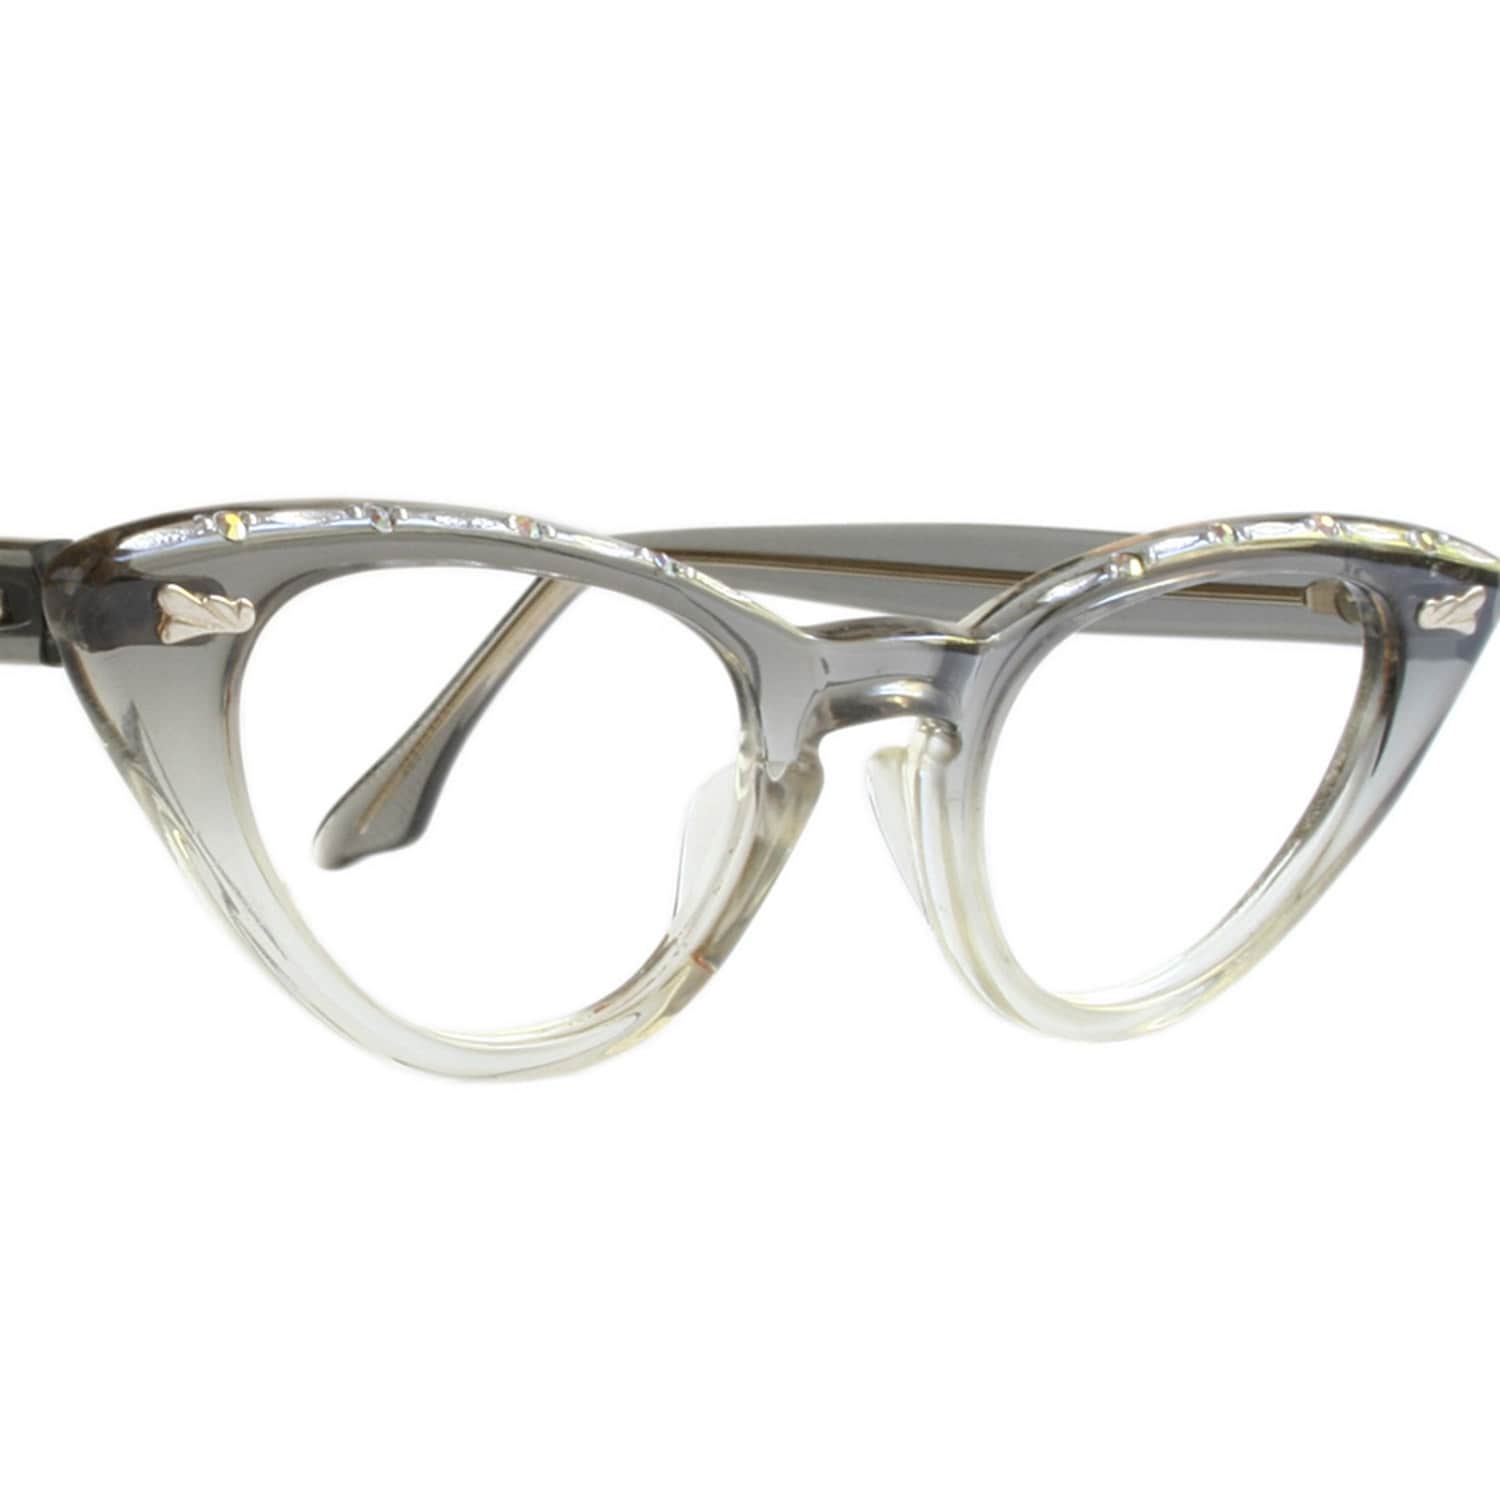 Small Cat Eye Glasses Vintage Glasses Frames Cat Eye